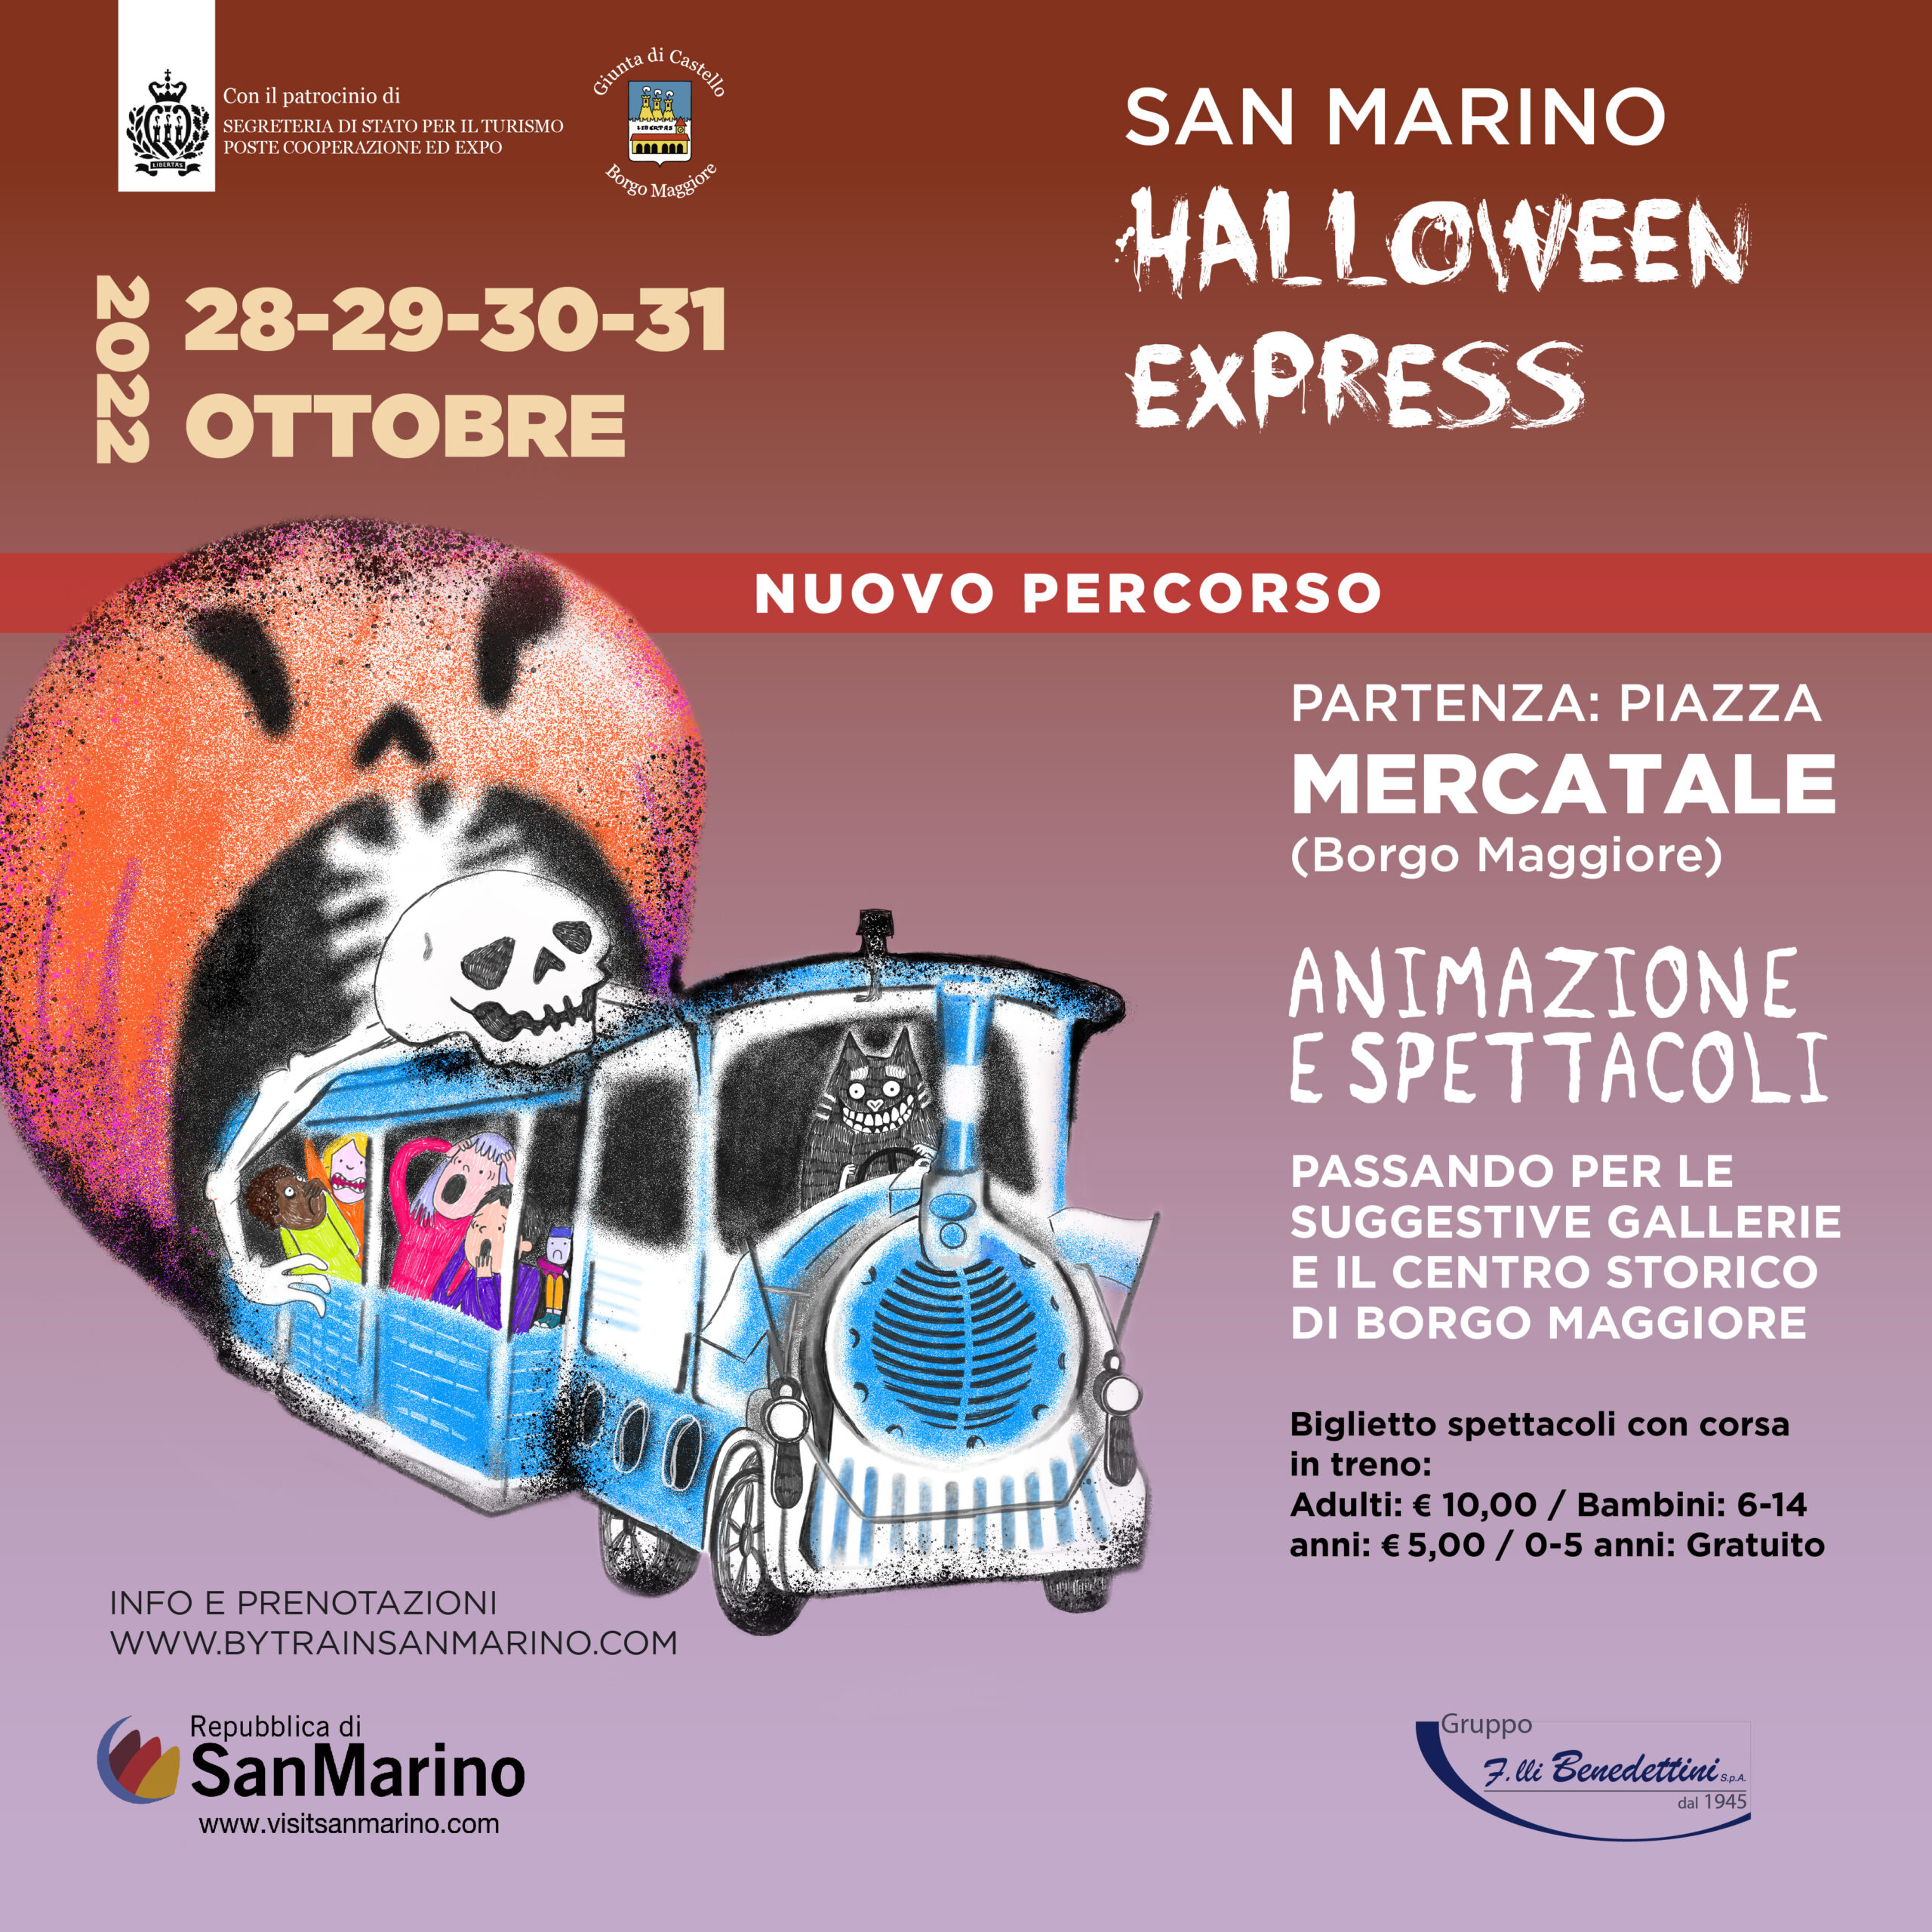 La Serenissima ritorna a bordo del “San Marino Halloween Express”